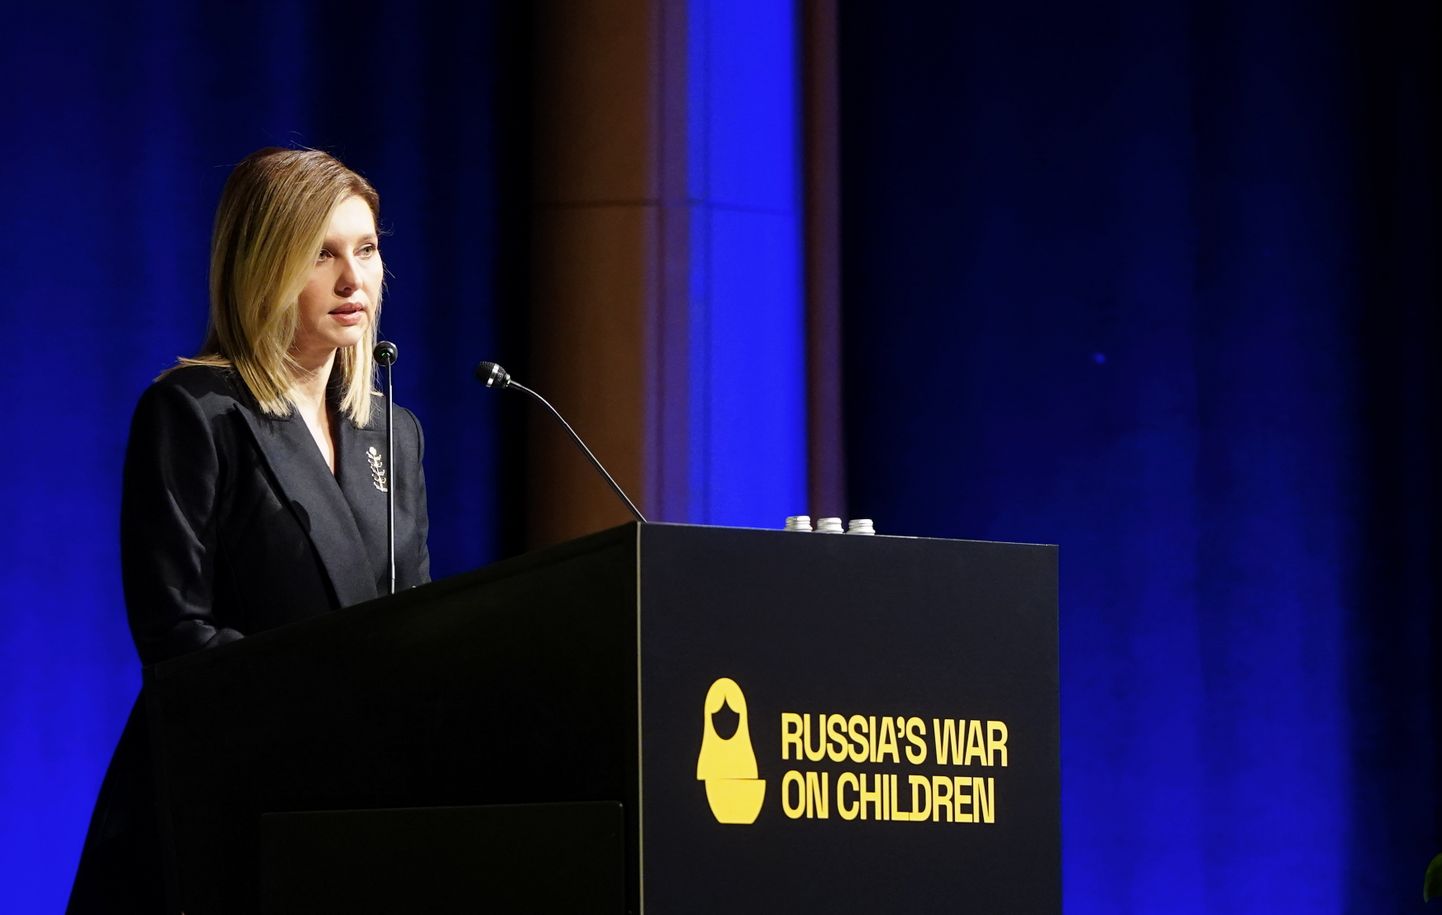 Ukrainas prezidenta kundze Olena Zelenska piedalās starptautiskā konferencē "Krievijas karš pret bērniem" ("Russia’s War on Children"), kas pulcē juristus, žurnālistus, cilvēktiesību aizstāvju nevalstisko organizāciju pārstāvjus, diplomātus un citus cilvēktiesību, ārvalstu tiesību un kara noziegumu ekspertus, lai diskutētu par iespējām Ukrainai atgūt nolaupītos bērnus.